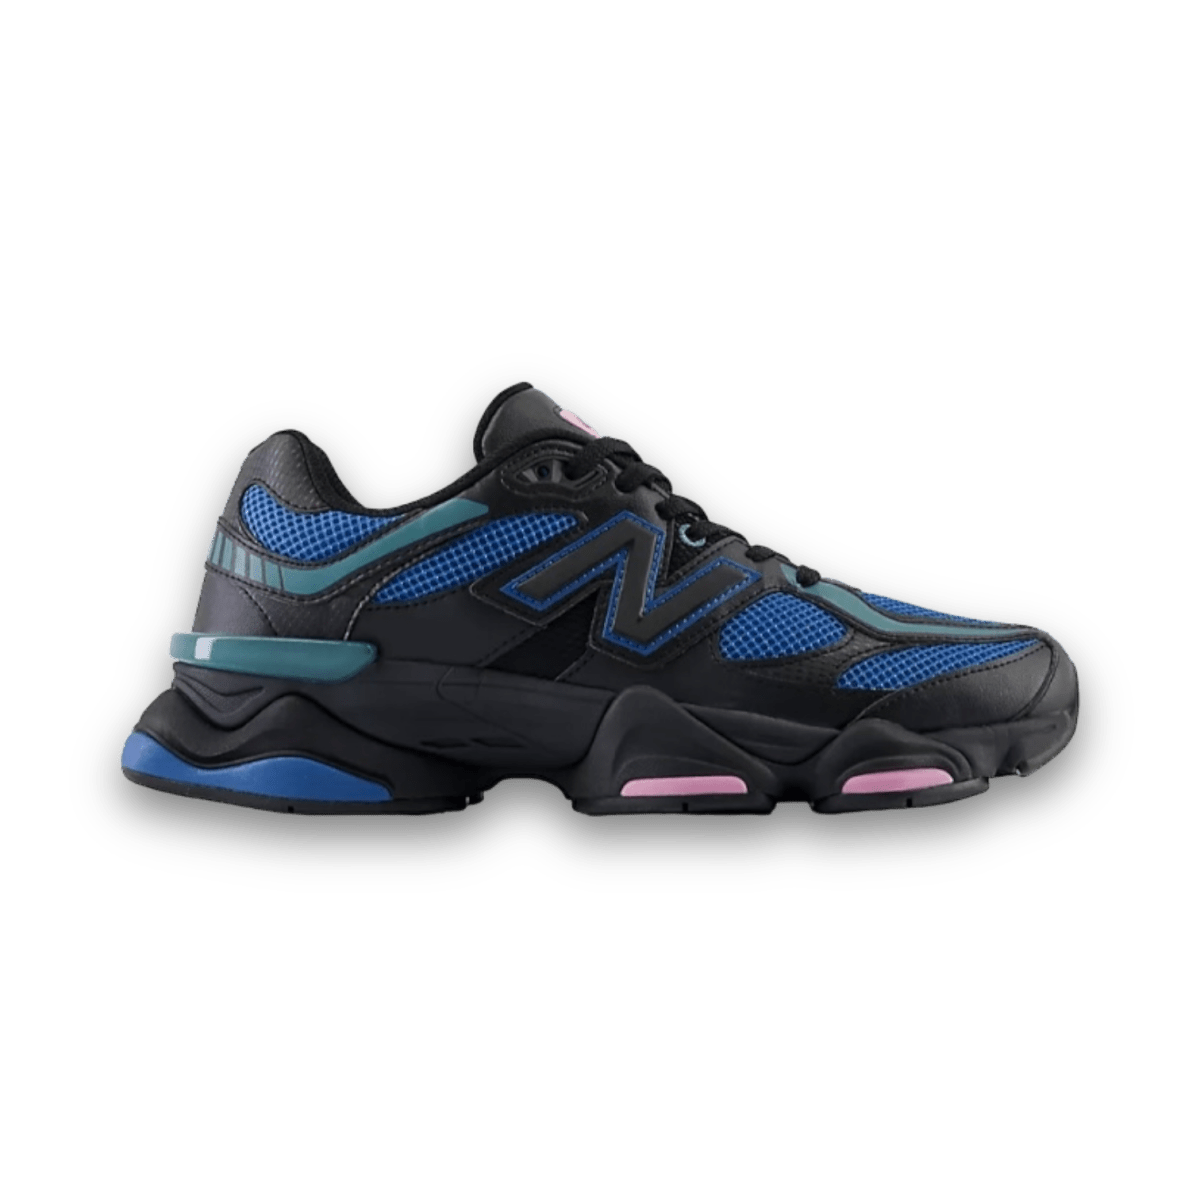 New Balance 9060 'Black Blue Agate' - Low Sneaker - Jawns on Fire Sneakers & Streetwear